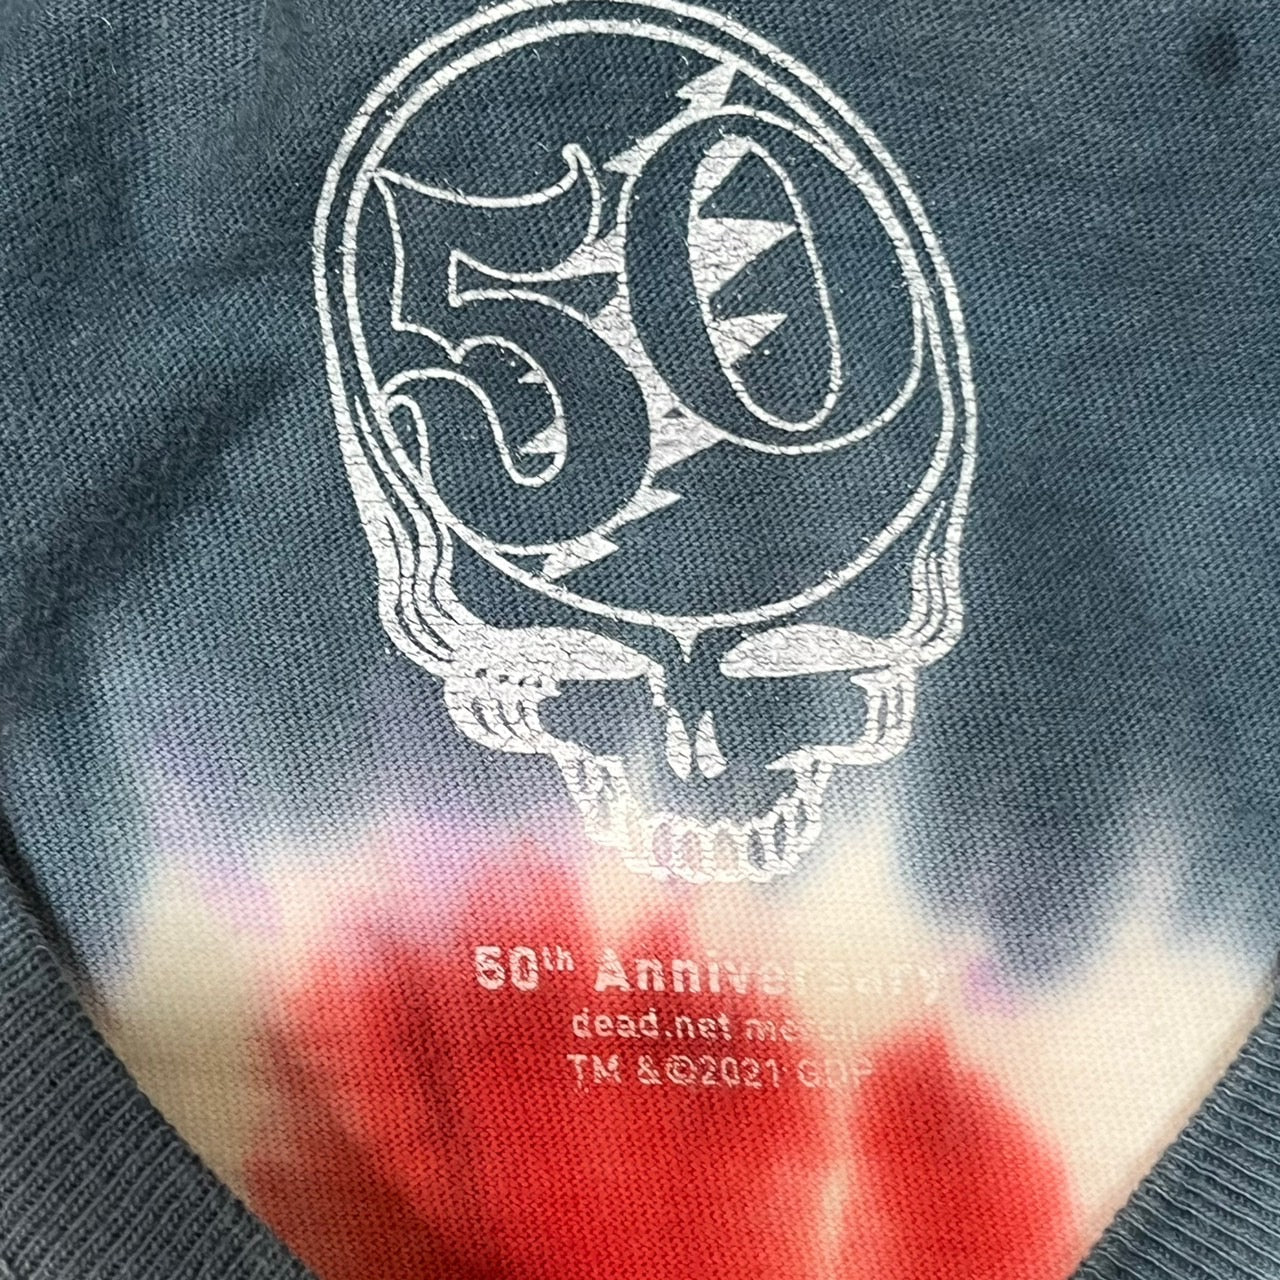 Comfort Colors(コンフォートカラーズ) ”GRATEFUL DEAD”50th anniversary TEE/タイダイプリントバンドTシャツ XL ブルー×レッド ©2021 50周年限定モデル